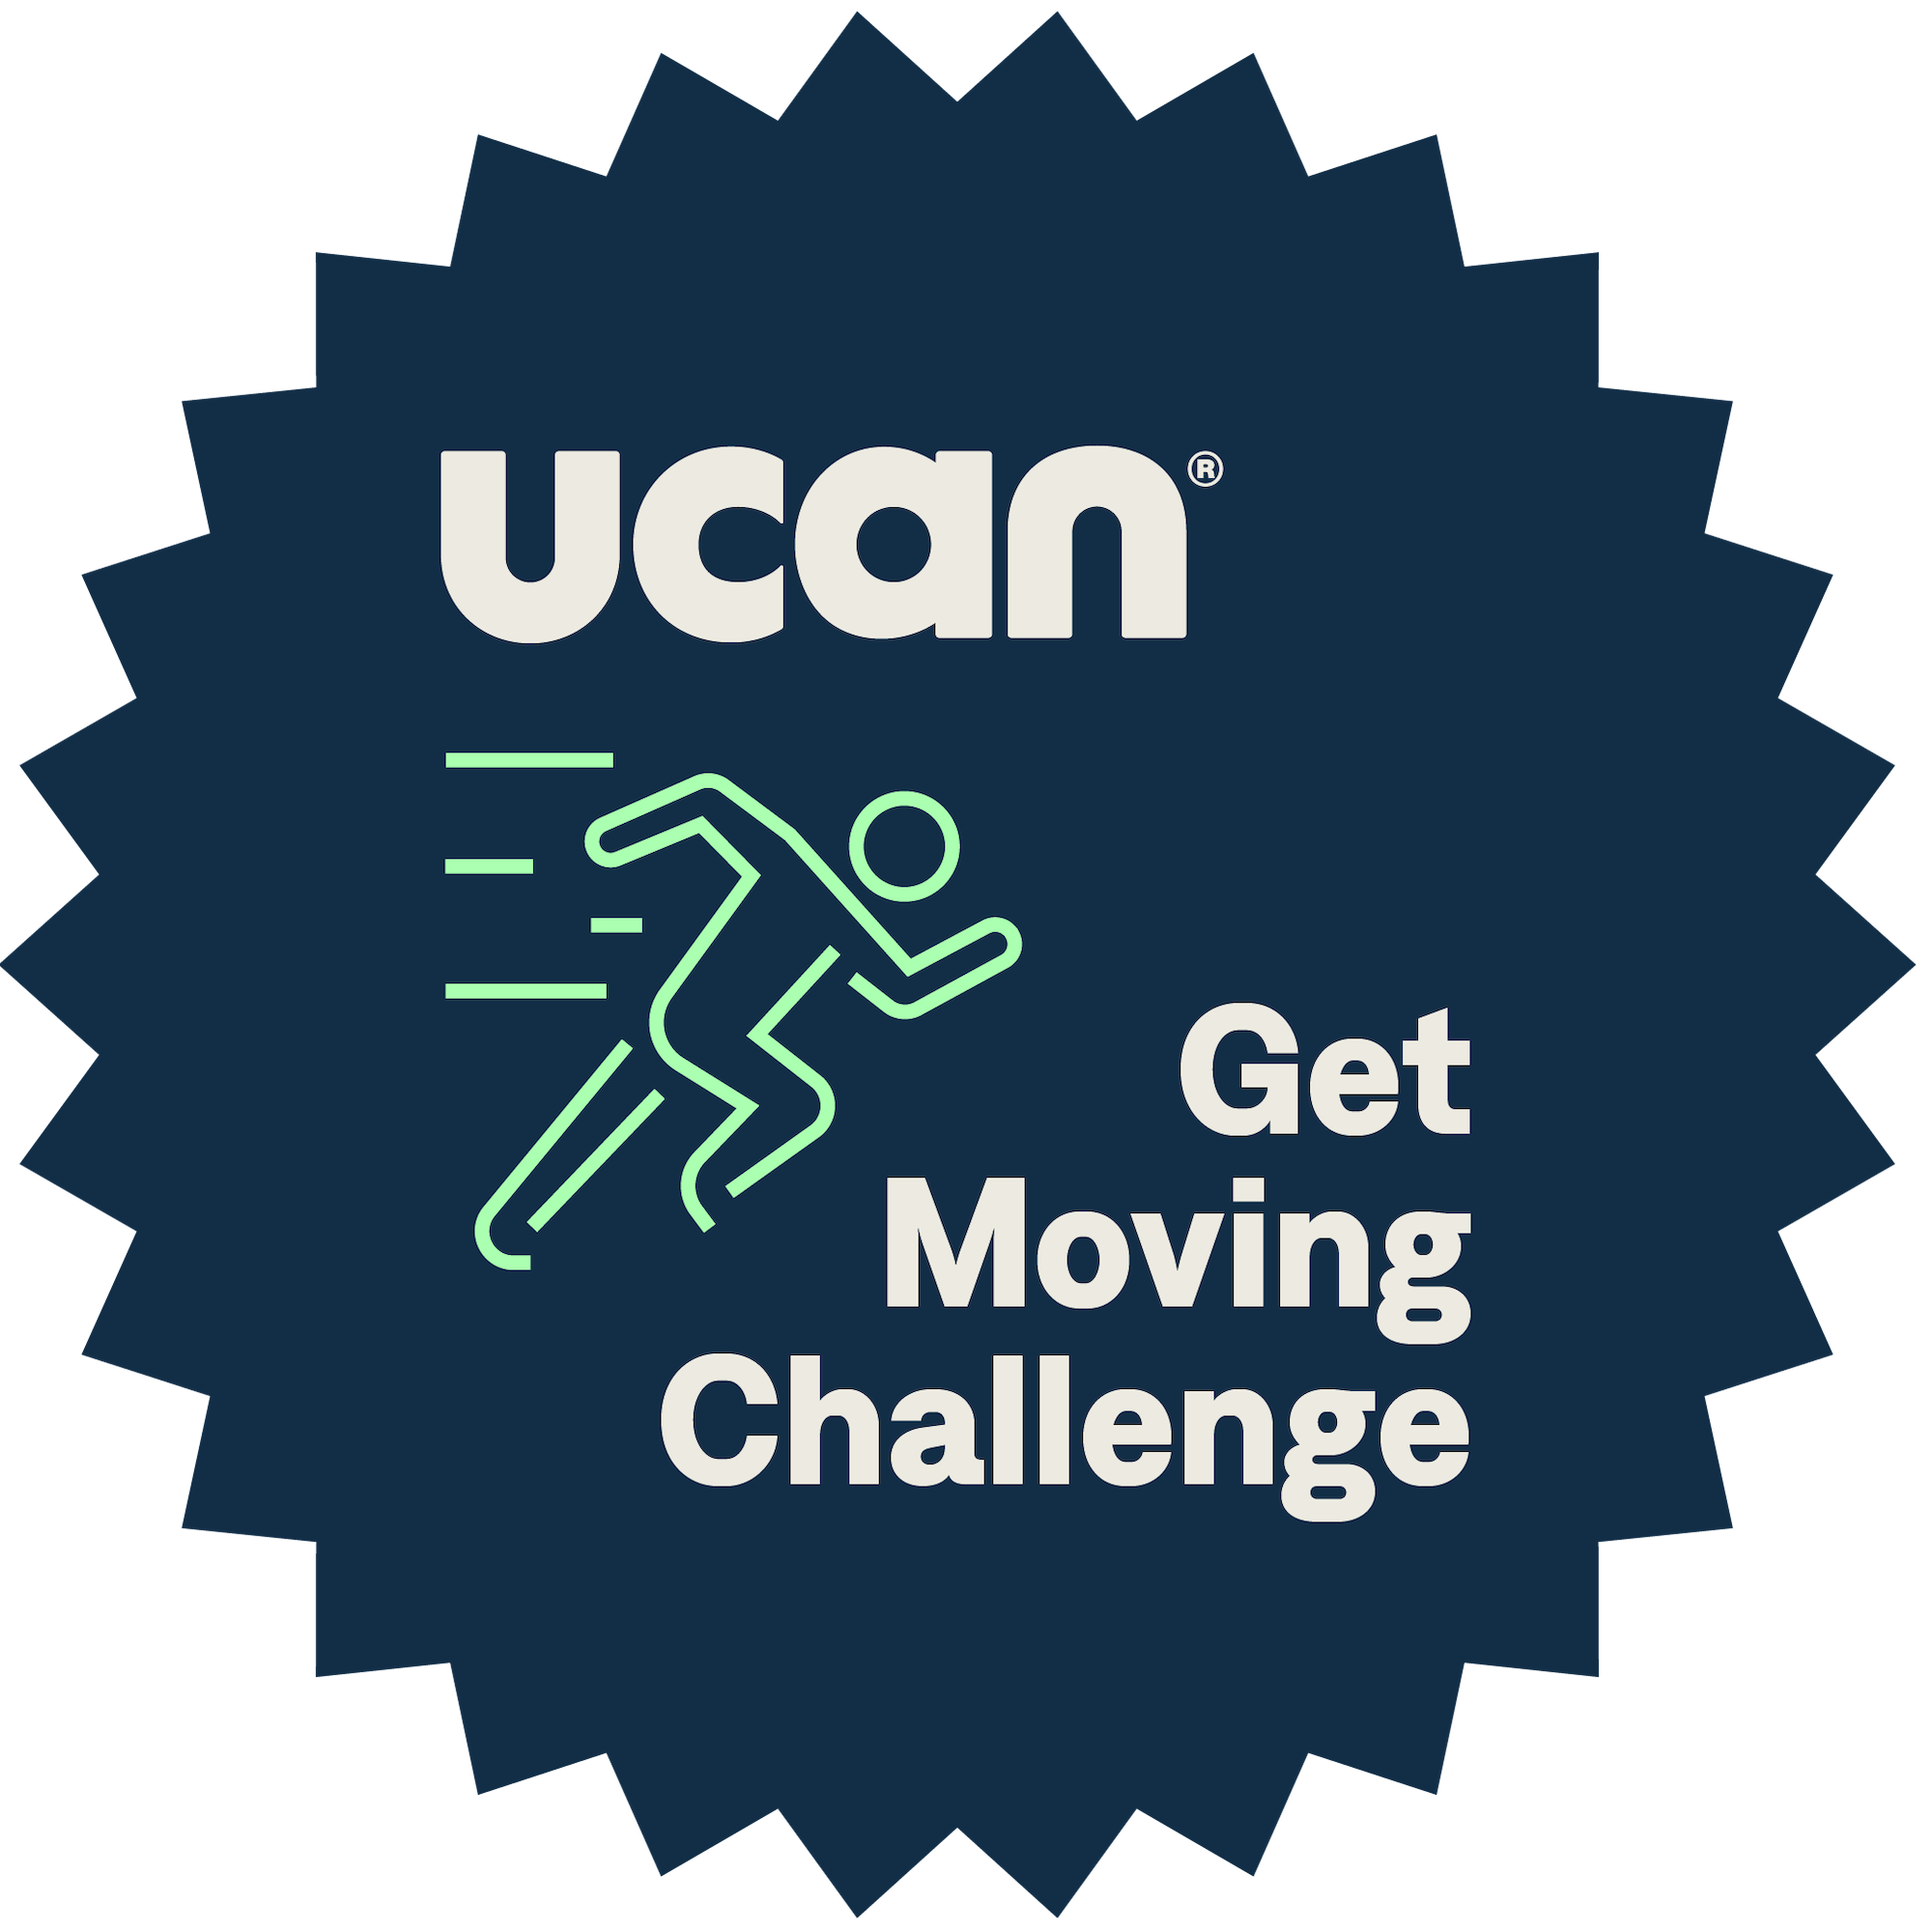 UCAN Get Moving Challenge